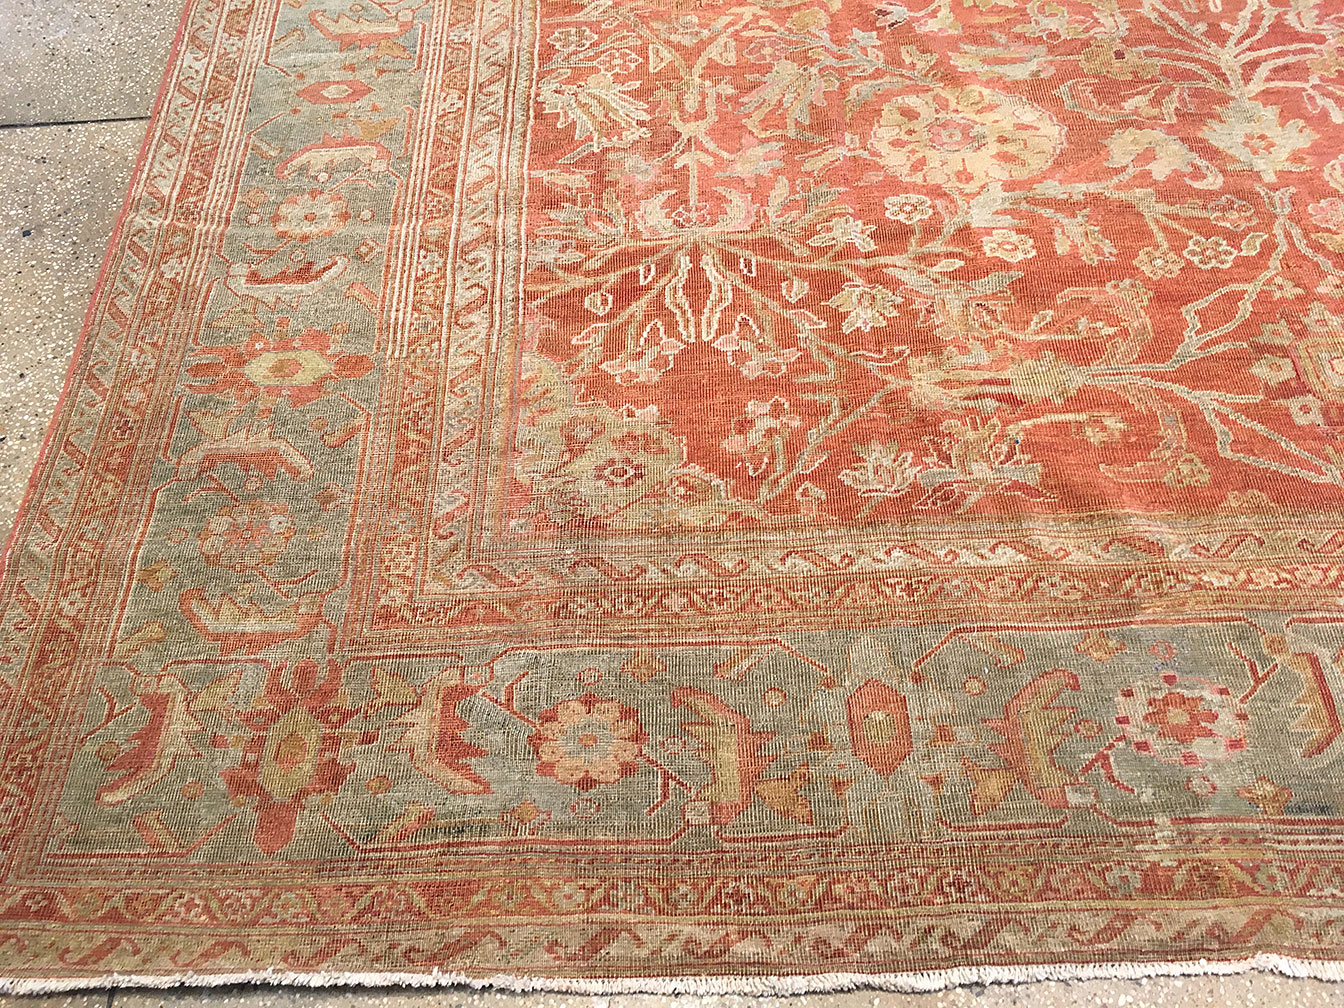 Antique mahal Carpet - # 52099